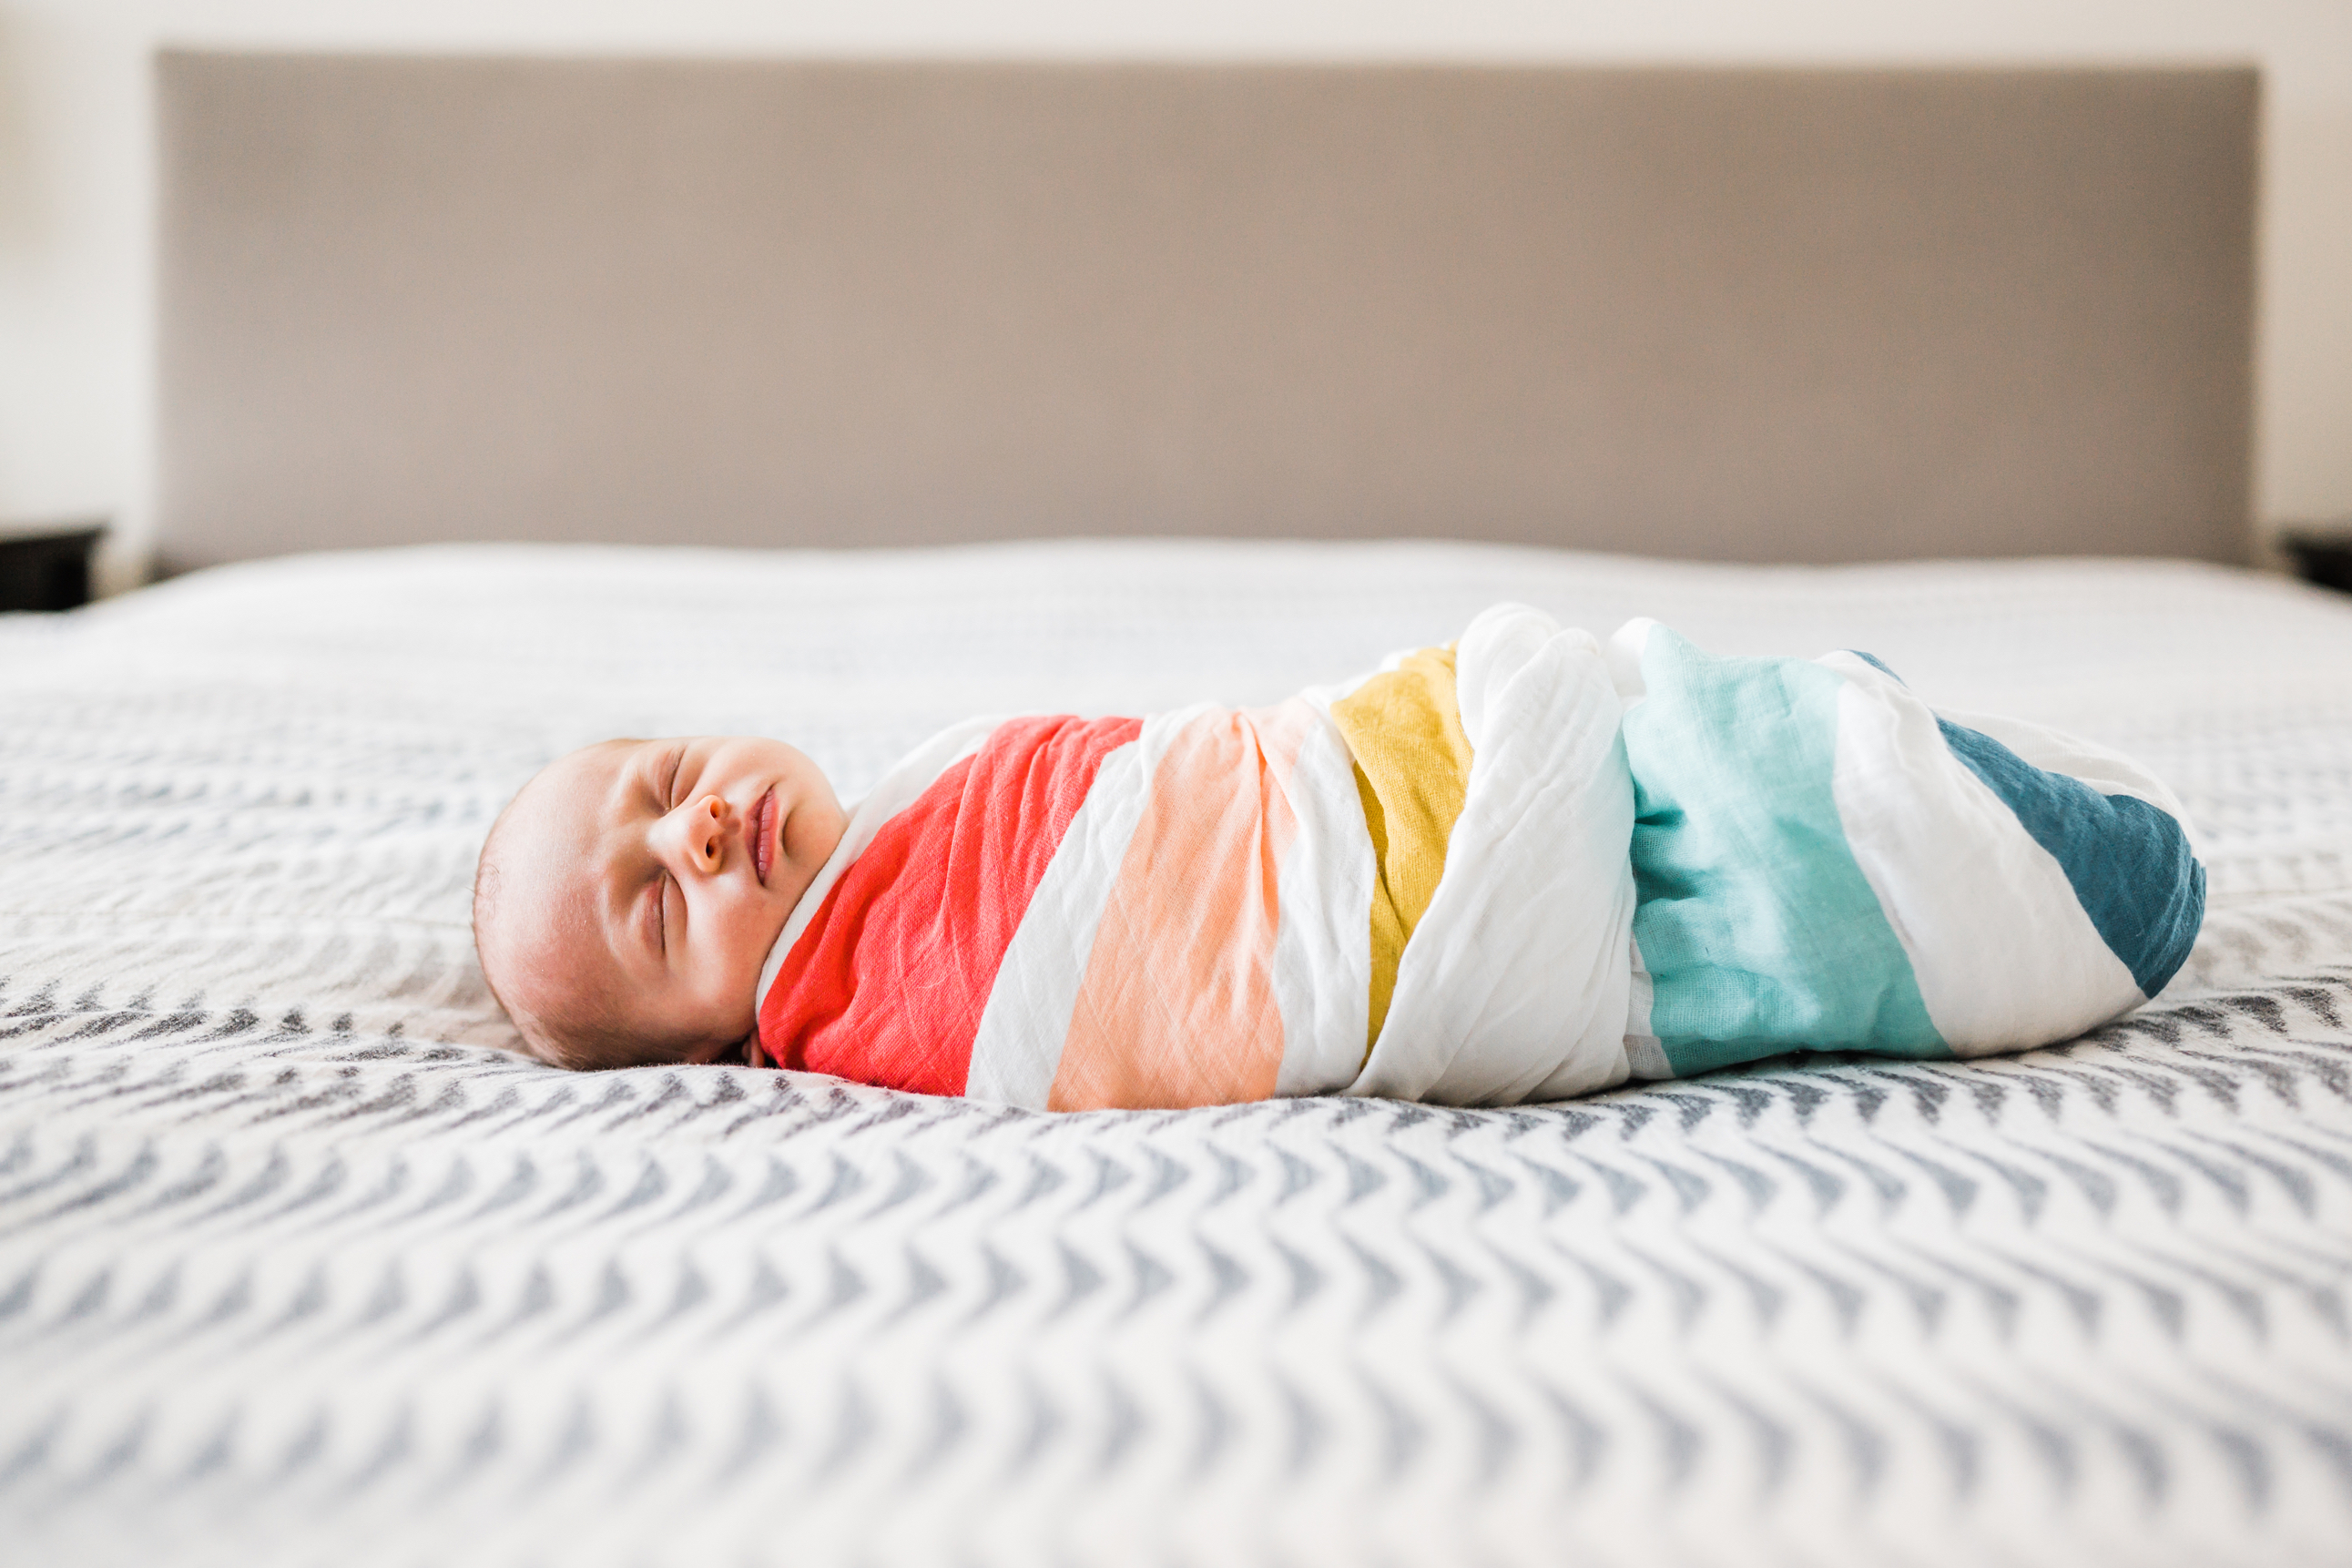 boulder-newborn-photographer, in-home-newborn-photographer, lifestyle-newborn-photographer, Lafayette-colorado-newborn-photographer, superior-colorado-newborn-photographer, nursery-photos-newborn,newborn-swaddled-clementine-kids-rainbow